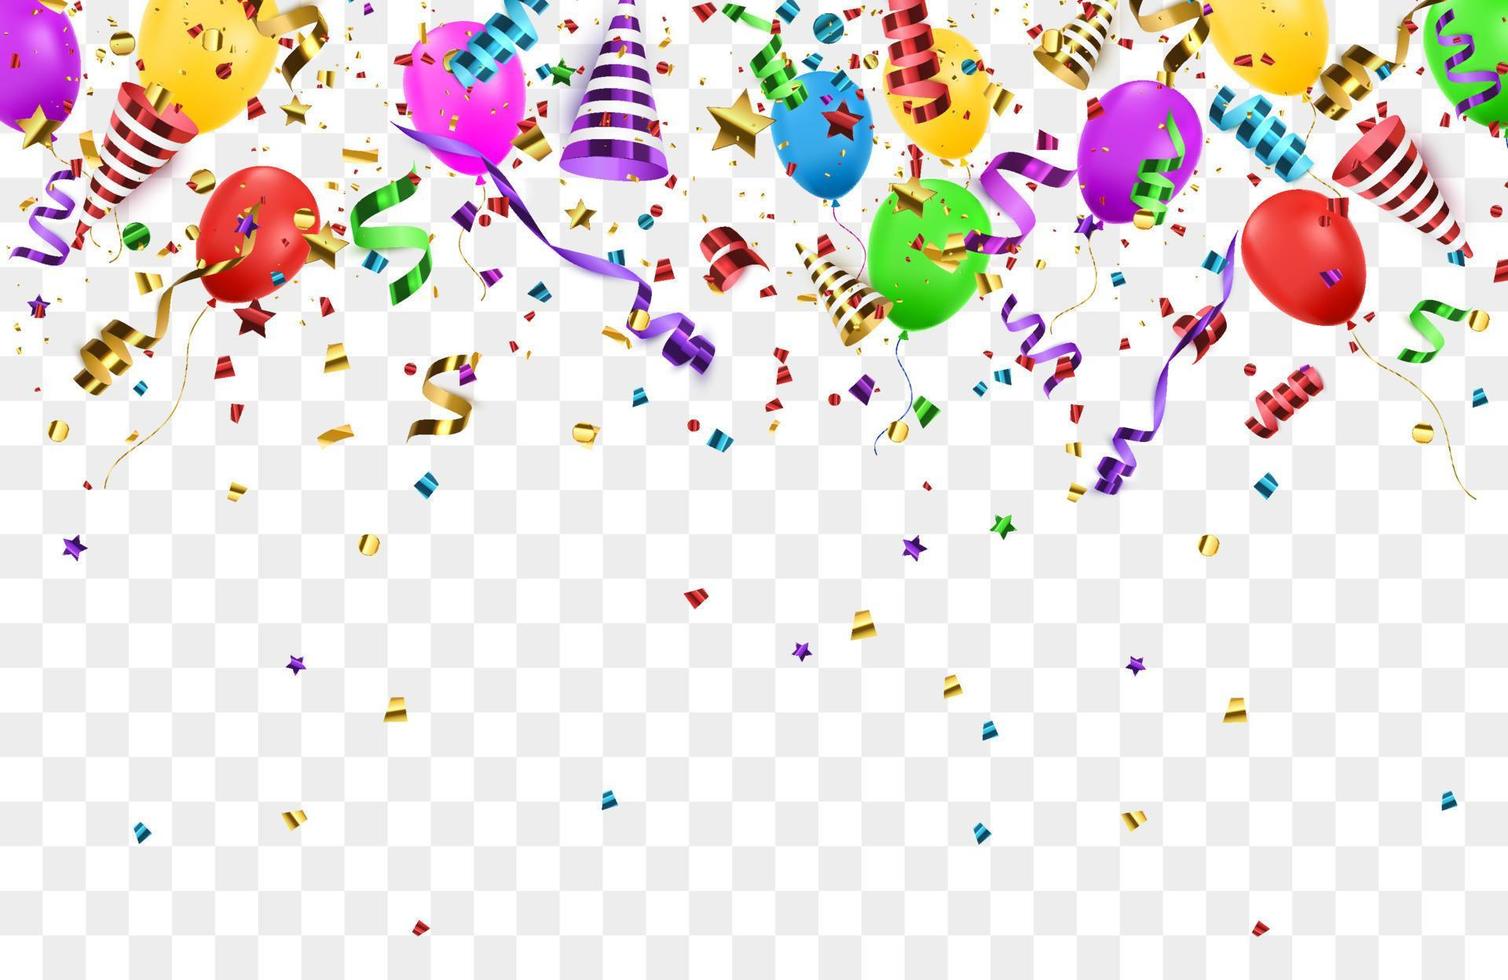 bannière de joyeux anniversaire avec des ballons de couleur et des confettis sur fond bleu. vecteur